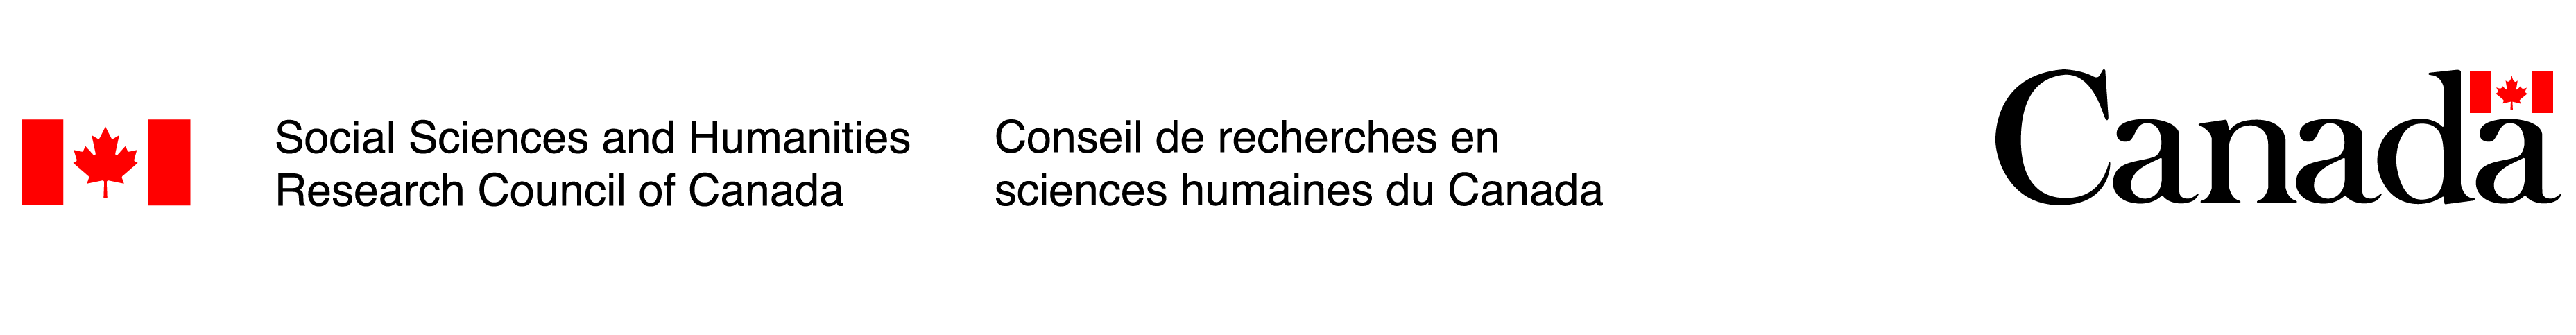 SSRCH logo / Logo de CRSH